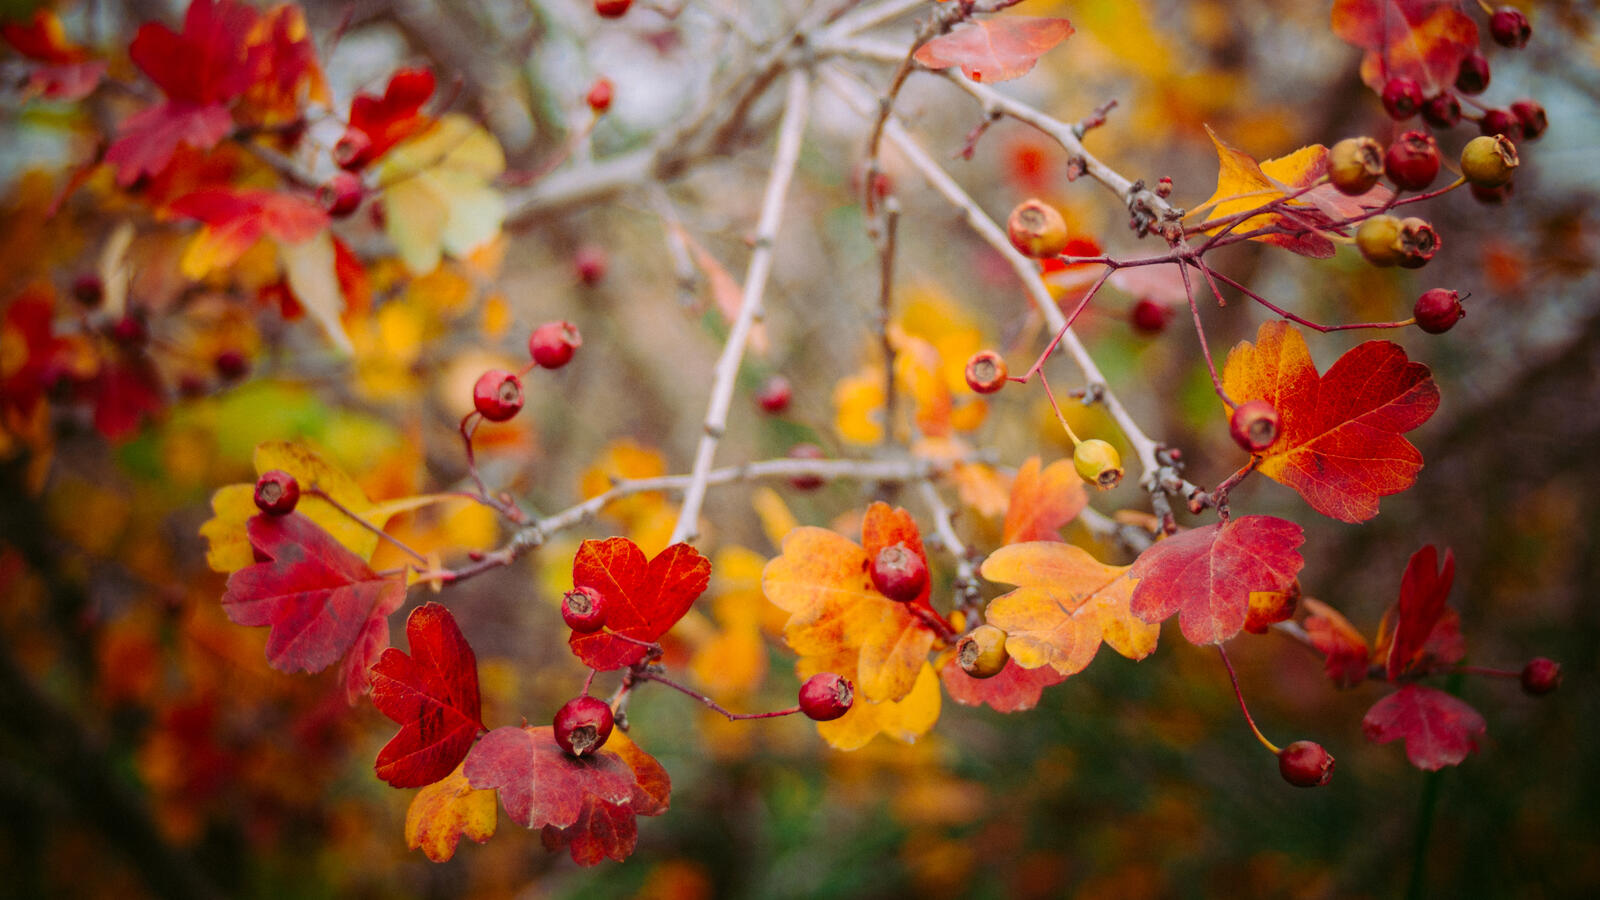 Бесплатное фото Ягодки на дереве с осенними листиками